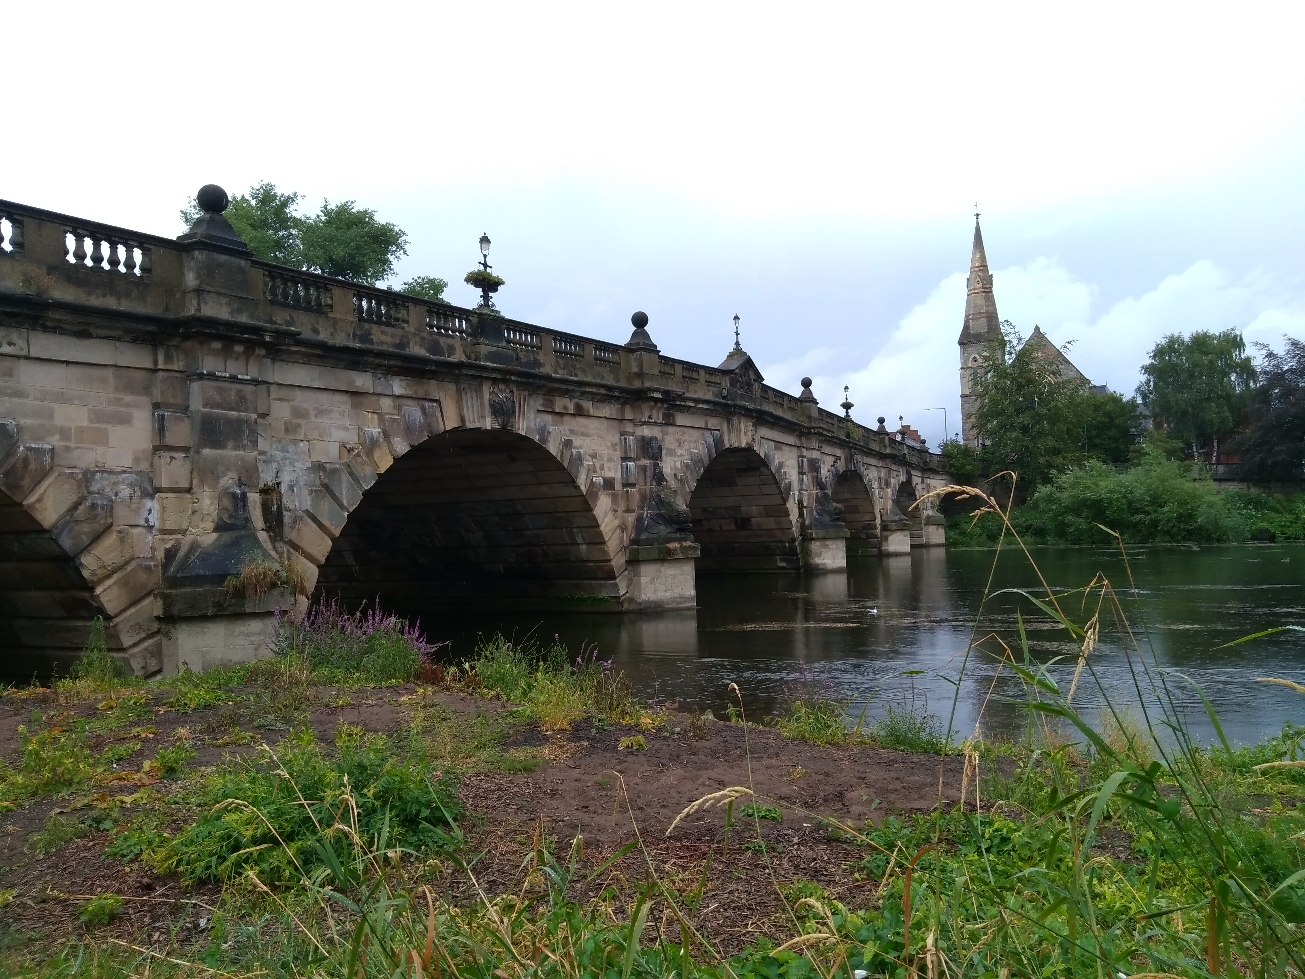 Shrewsbury Stone Bridge